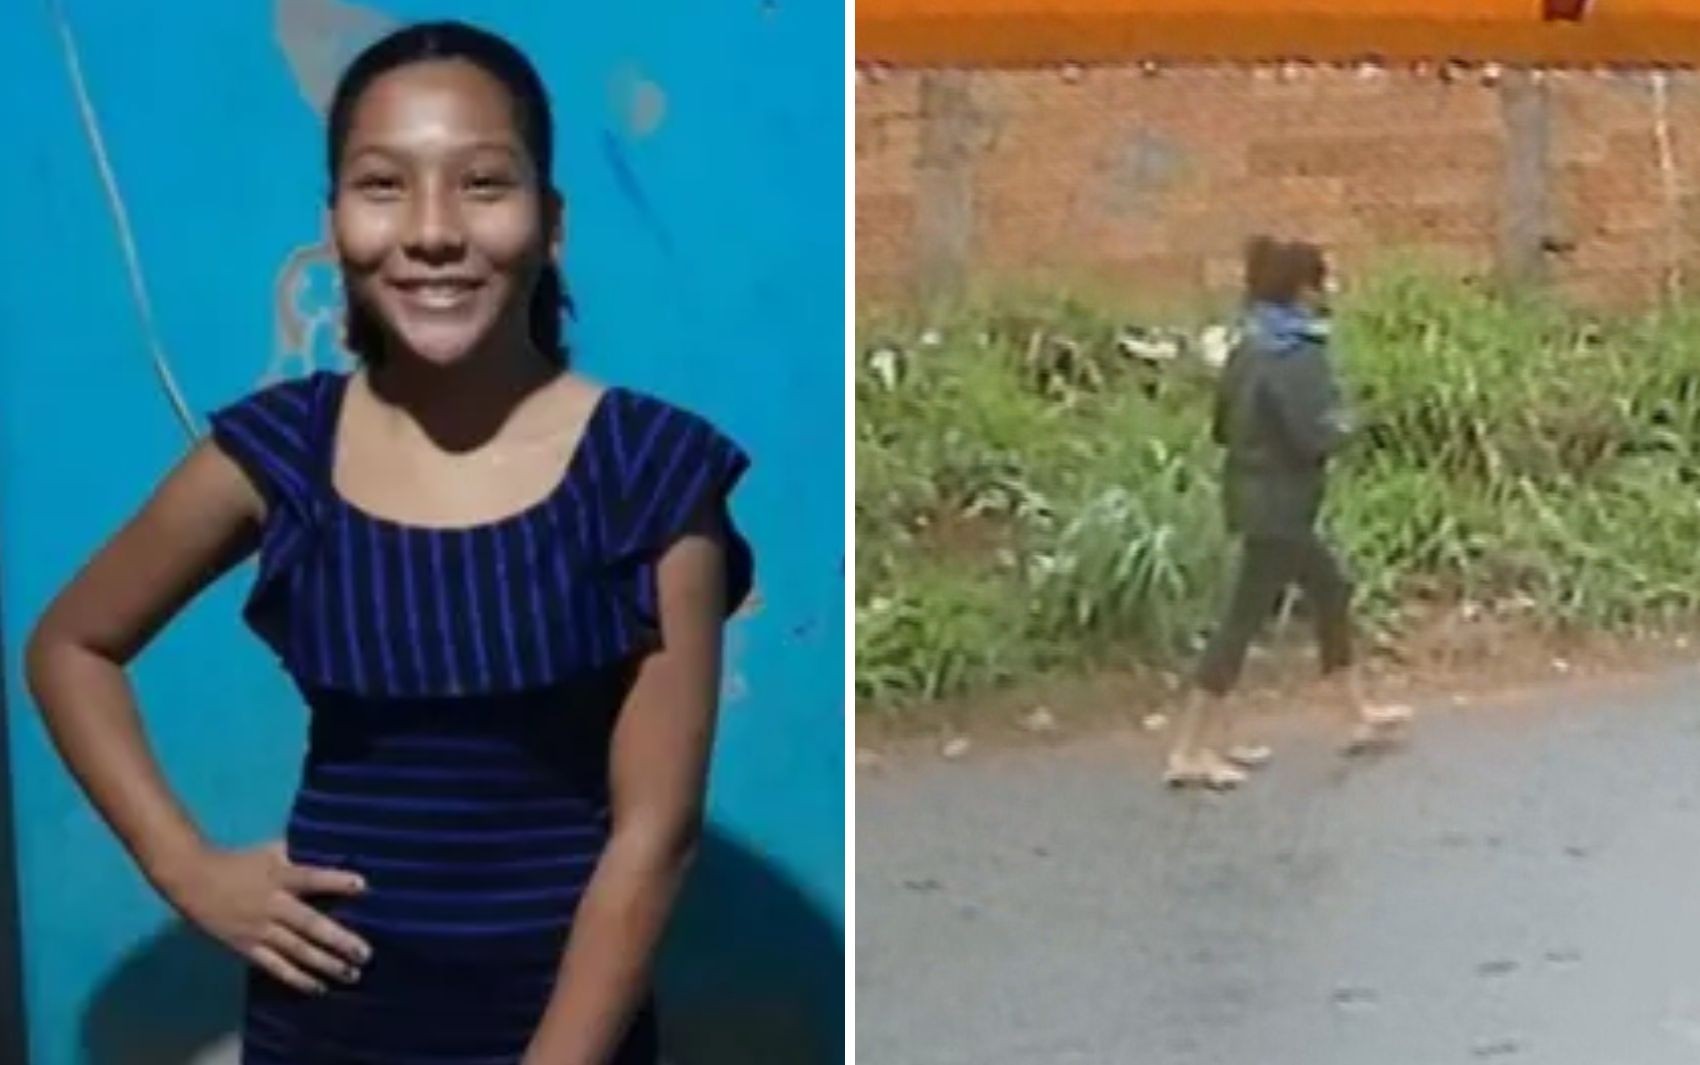 Caso Amélia Vitória: suspeito de matar estudante que tinha sumido ao ir buscar irmã em escola responde por estuprar a enteada, diz PM